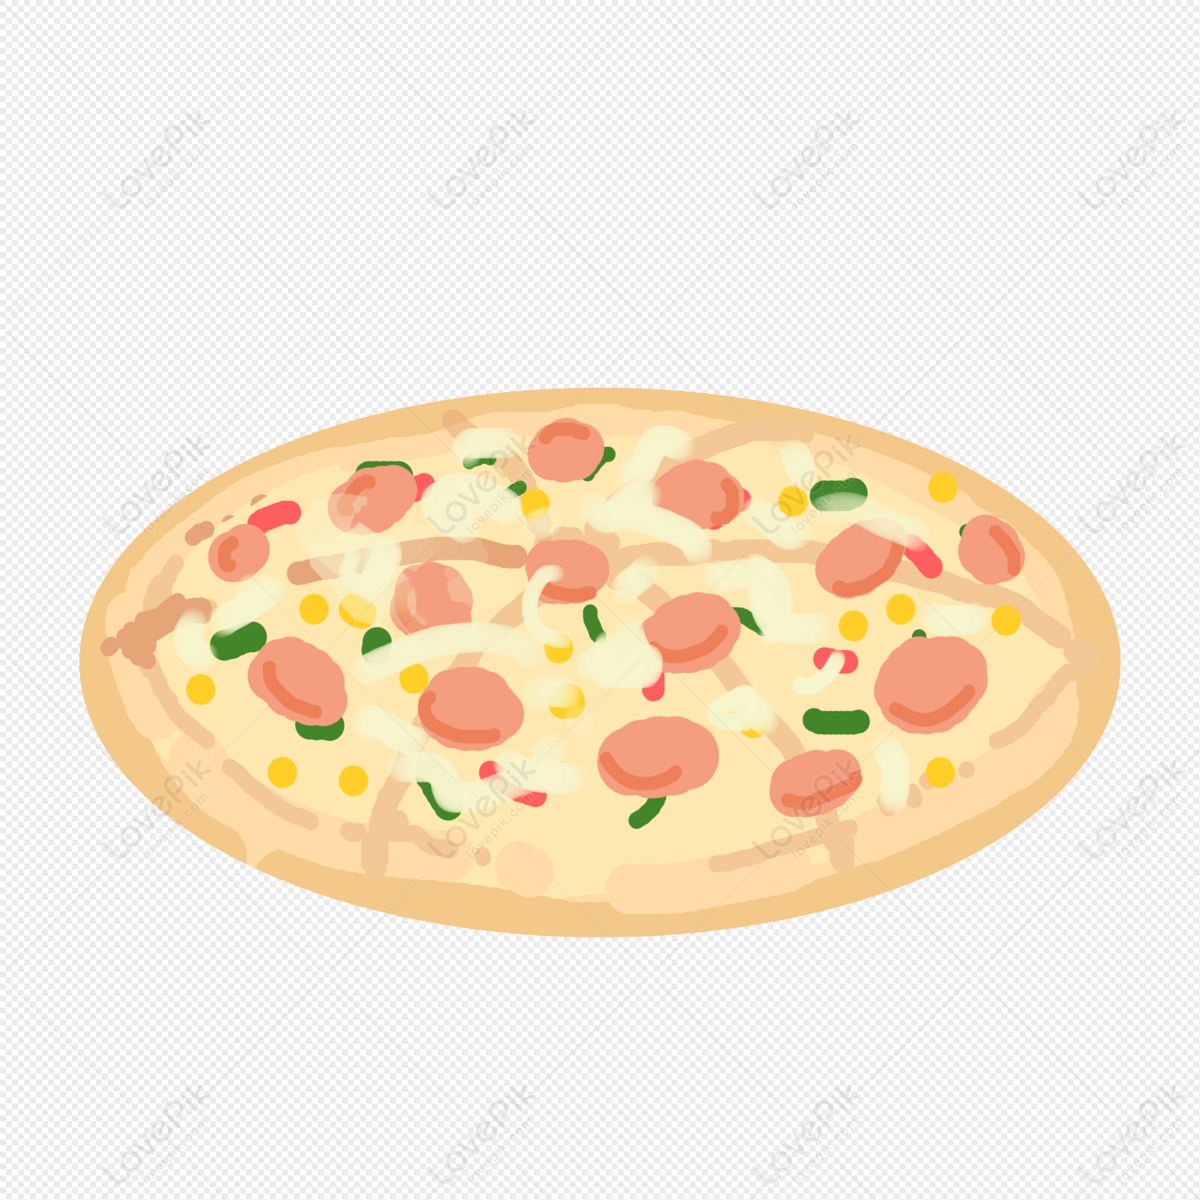 200+ Tiệm Bánh Pizza & ảnh Pizza miễn phí - Pixabay